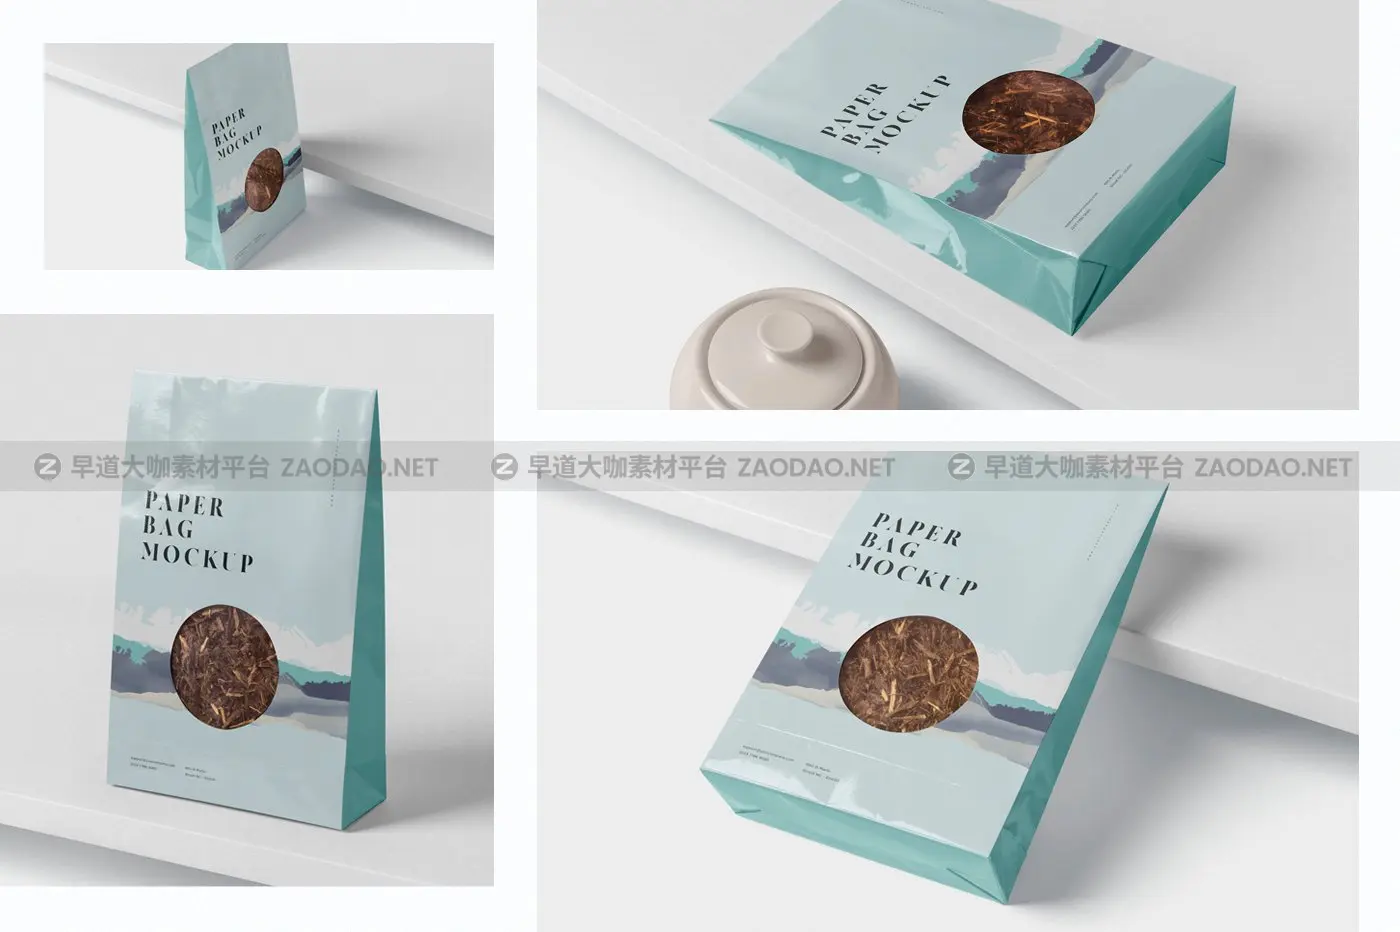 咖啡茶叶纸袋设计PSD样机模板 Paper Bag Mockup插图5